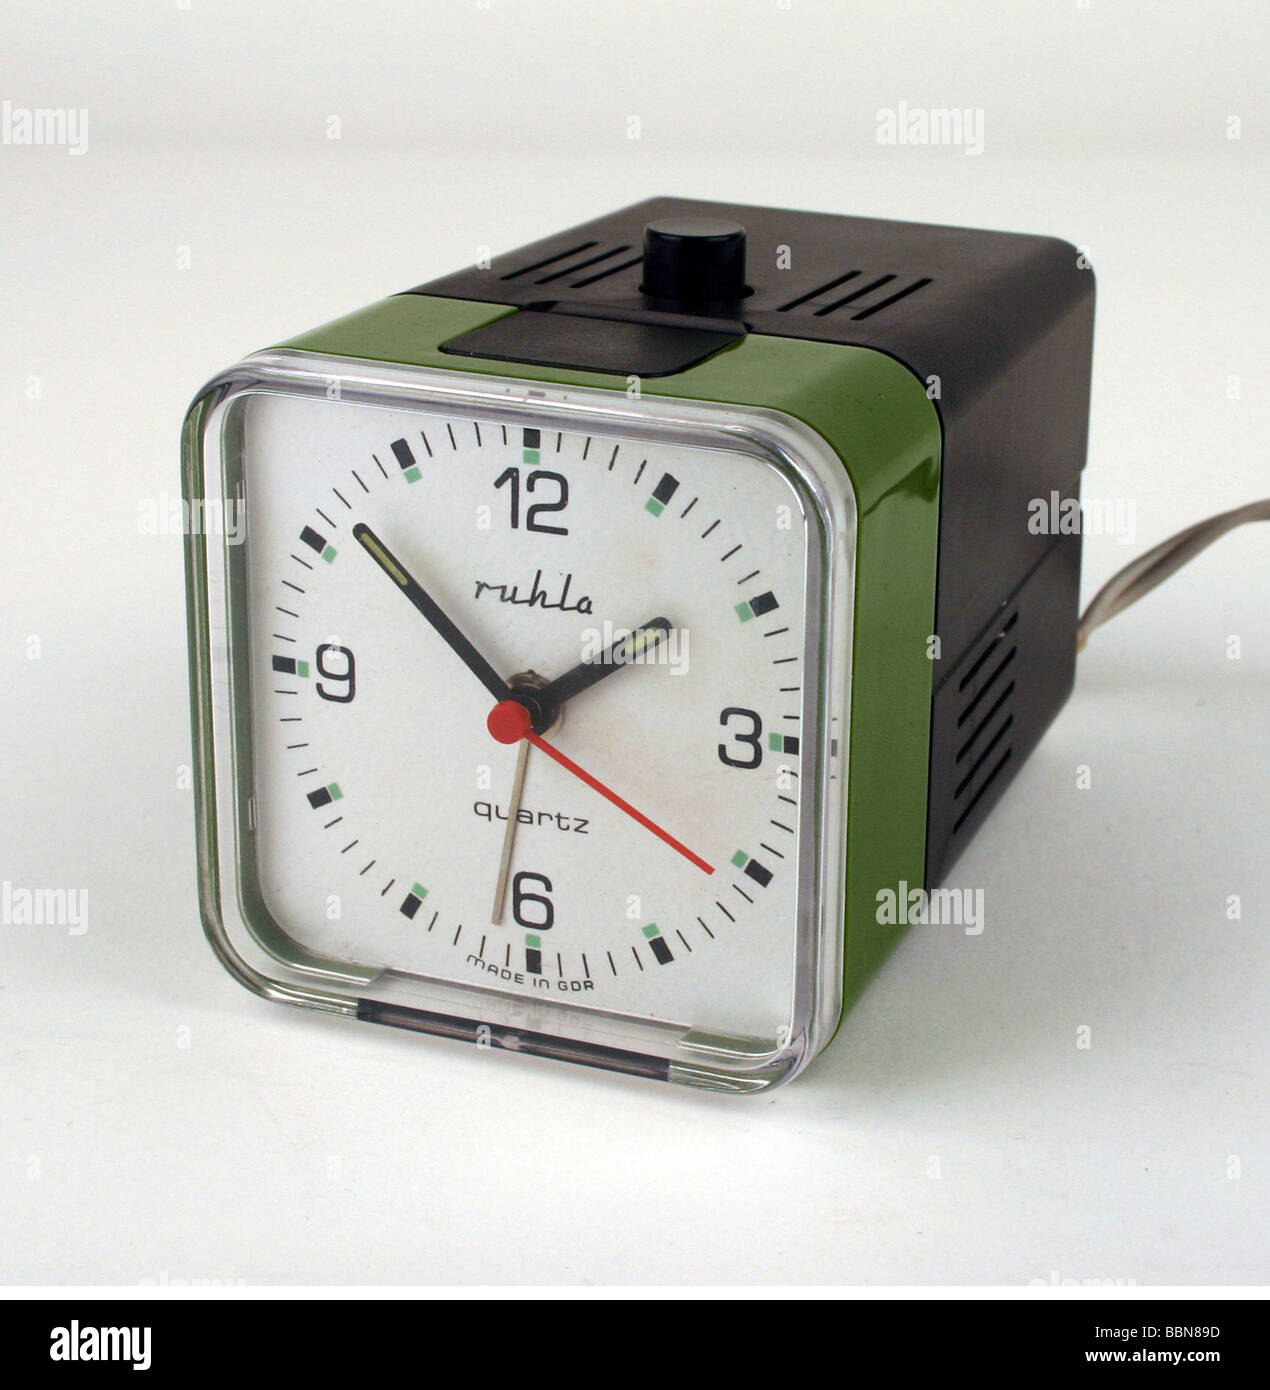 Uhren, Wecker für Gehörlose, Kaliber 64, hergestellt vom Kombinat Ruhla, DDR,  1970er Jahre Stockfotografie - Alamy